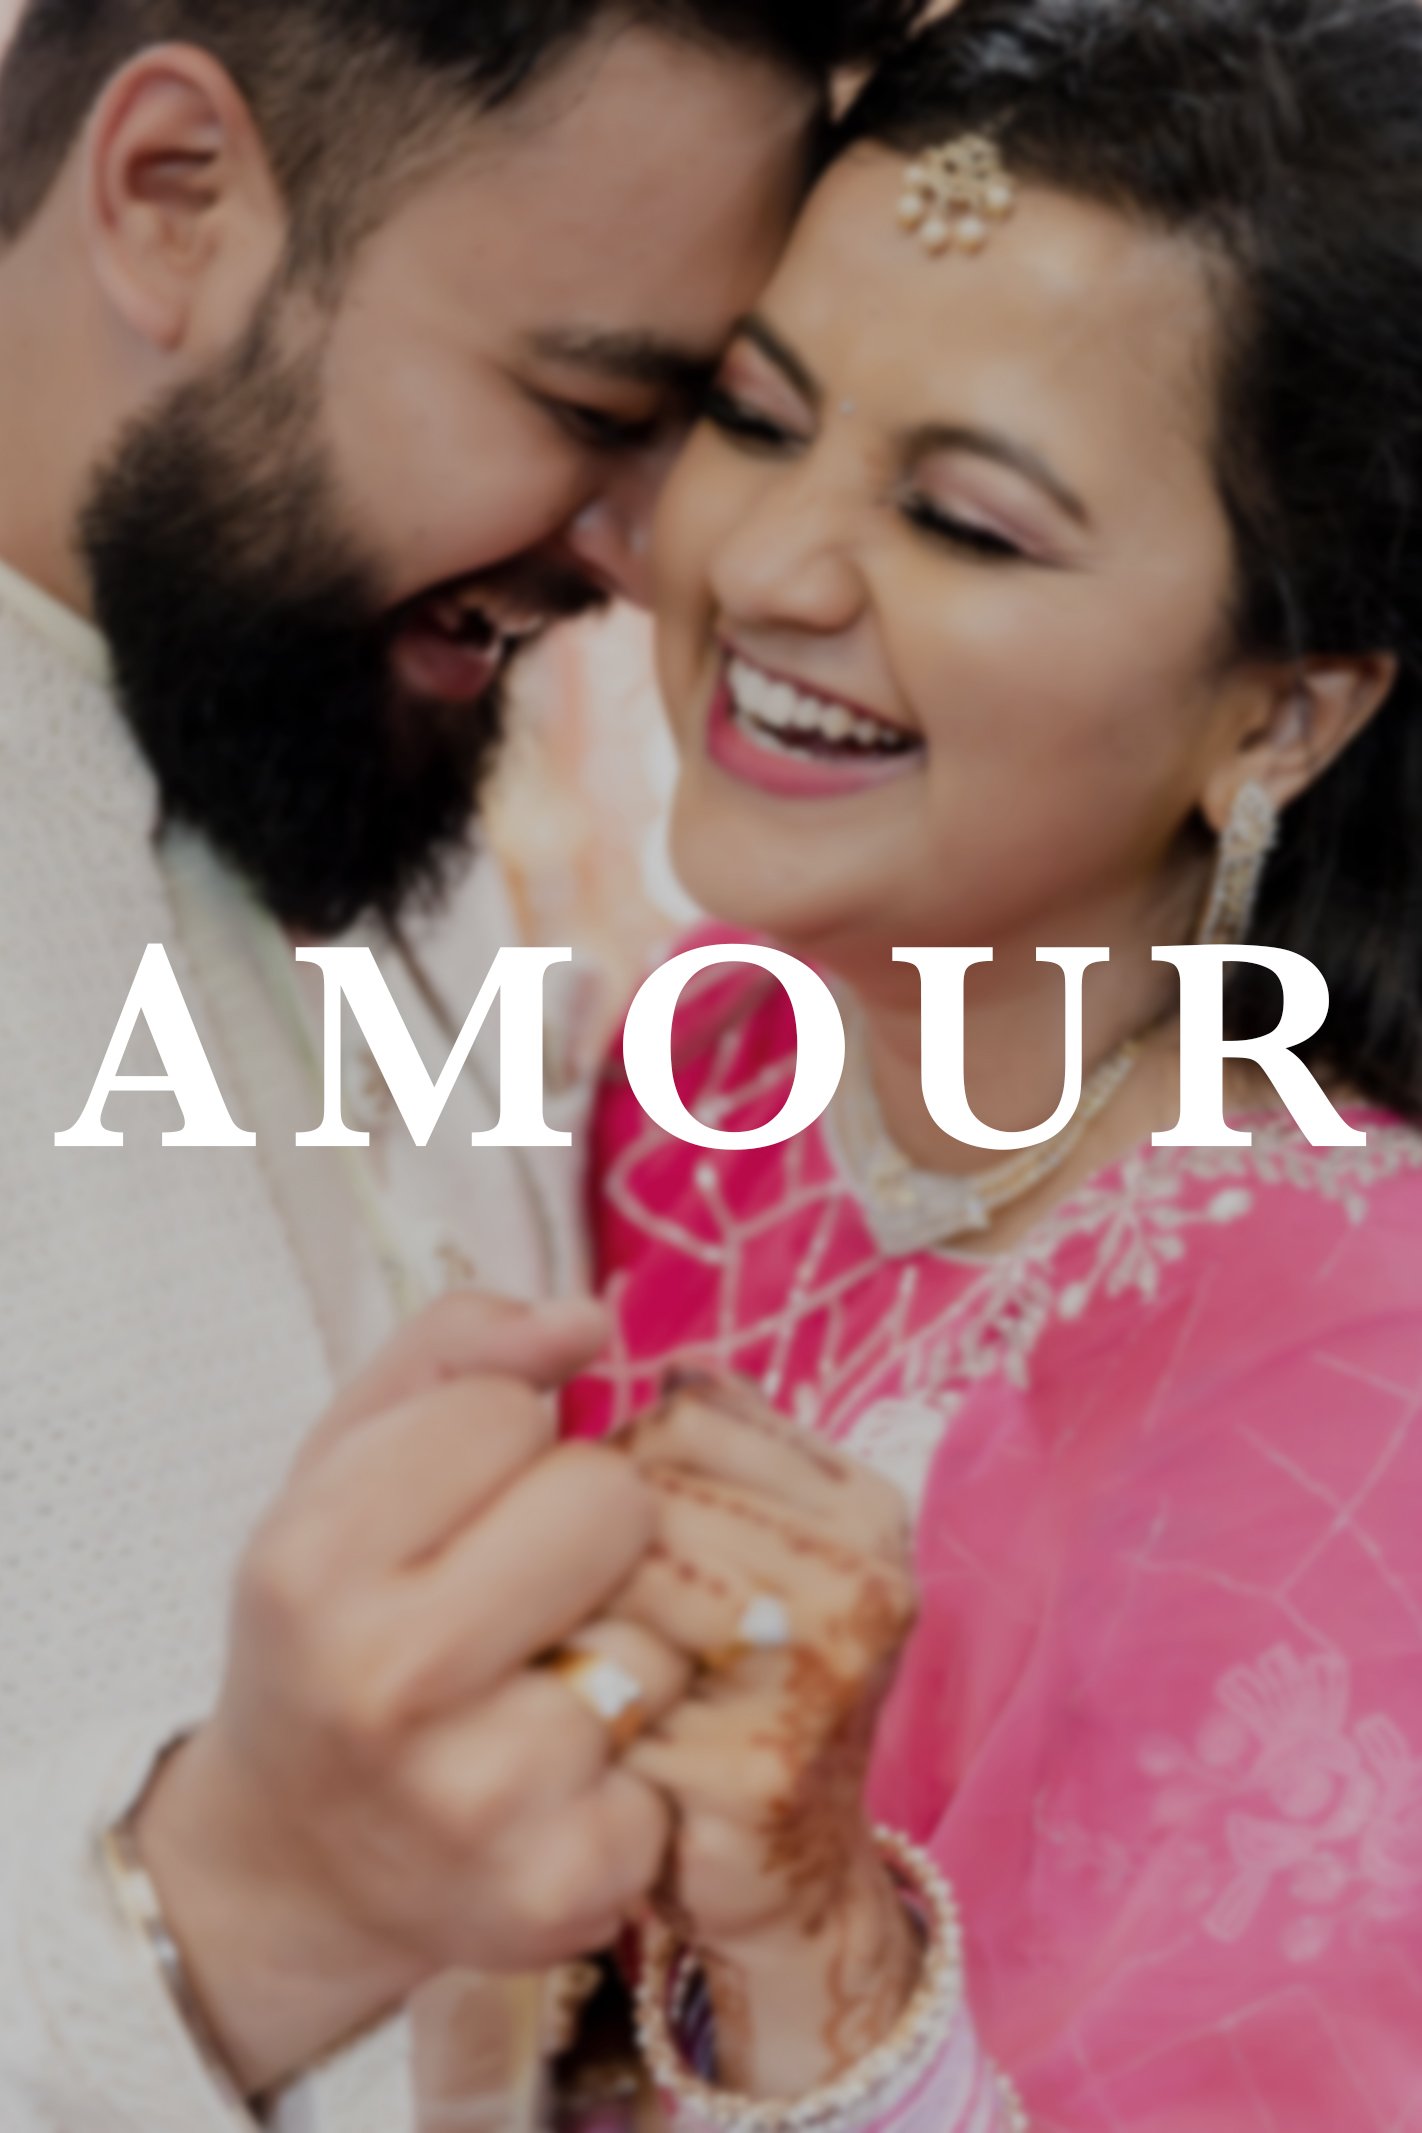  "Bride-and-Groom-Wedding-Photoshoot-Bangalore," "Destination-Wedding-Photography-Ideas," "Wedding-Couple-Poses-Pune," "Best-Wedding-Photographers-Near-Me" 